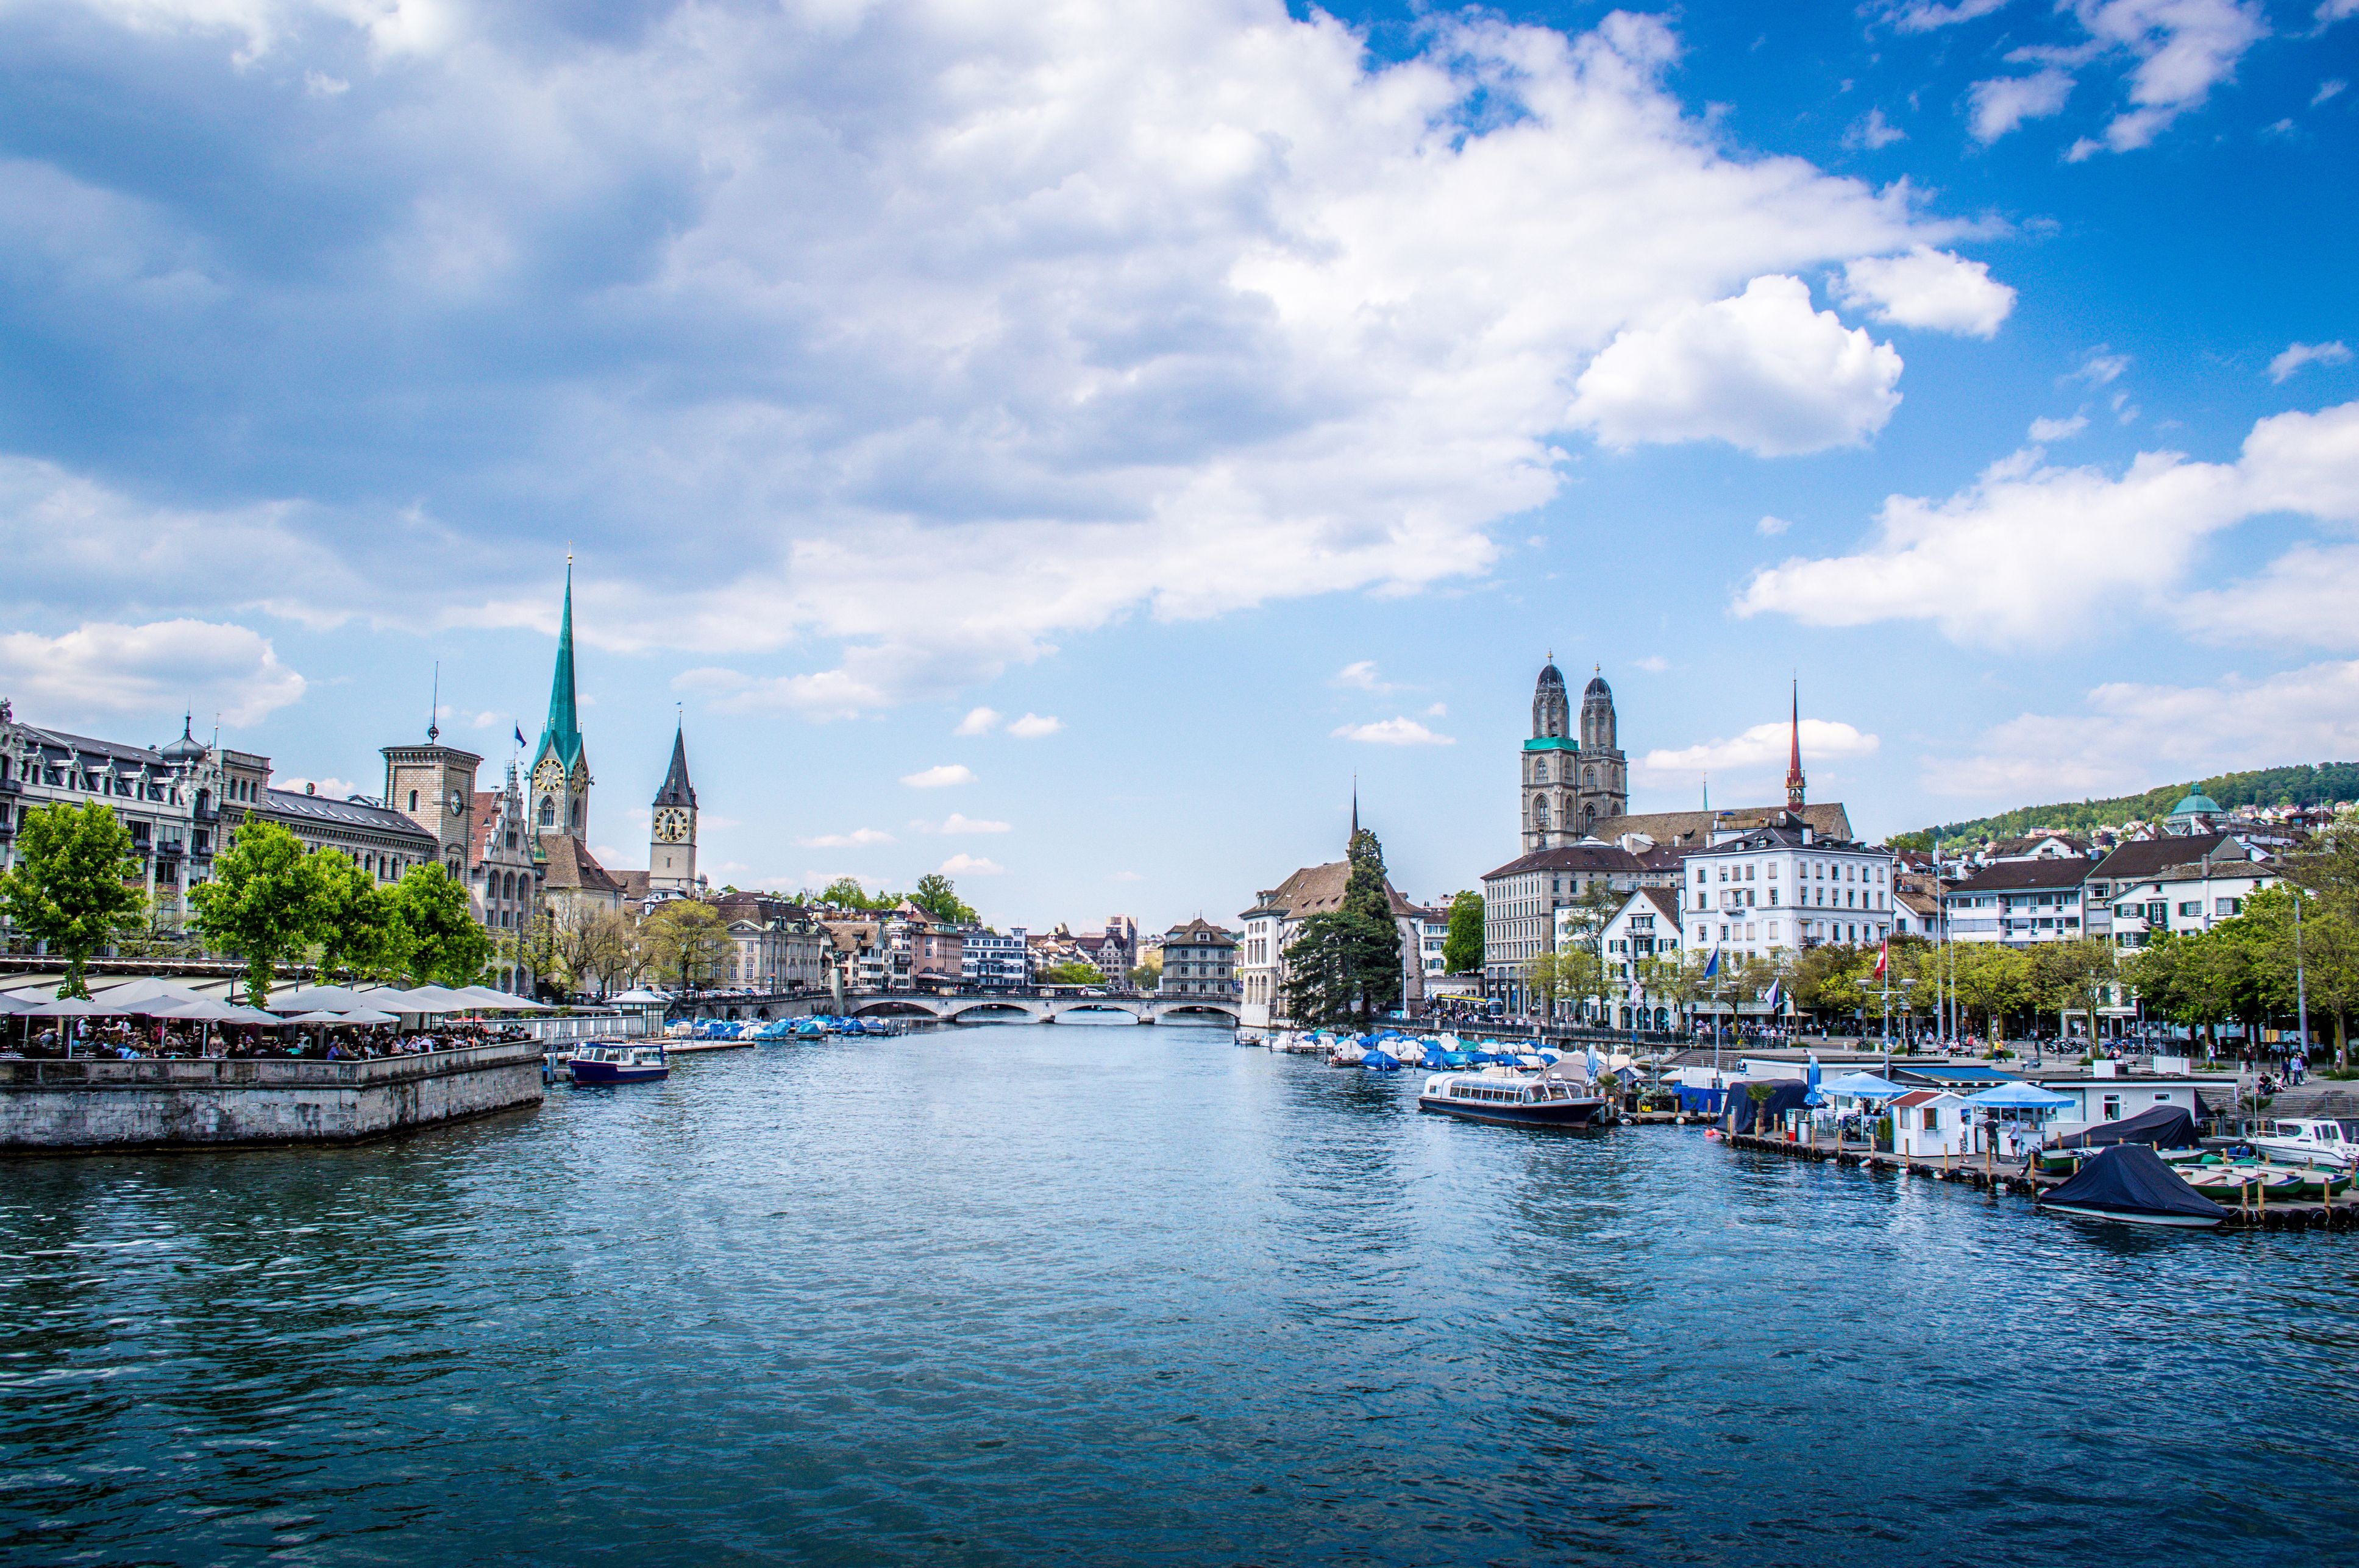 Cityscape From Limmat River in Zurich, Switzerland